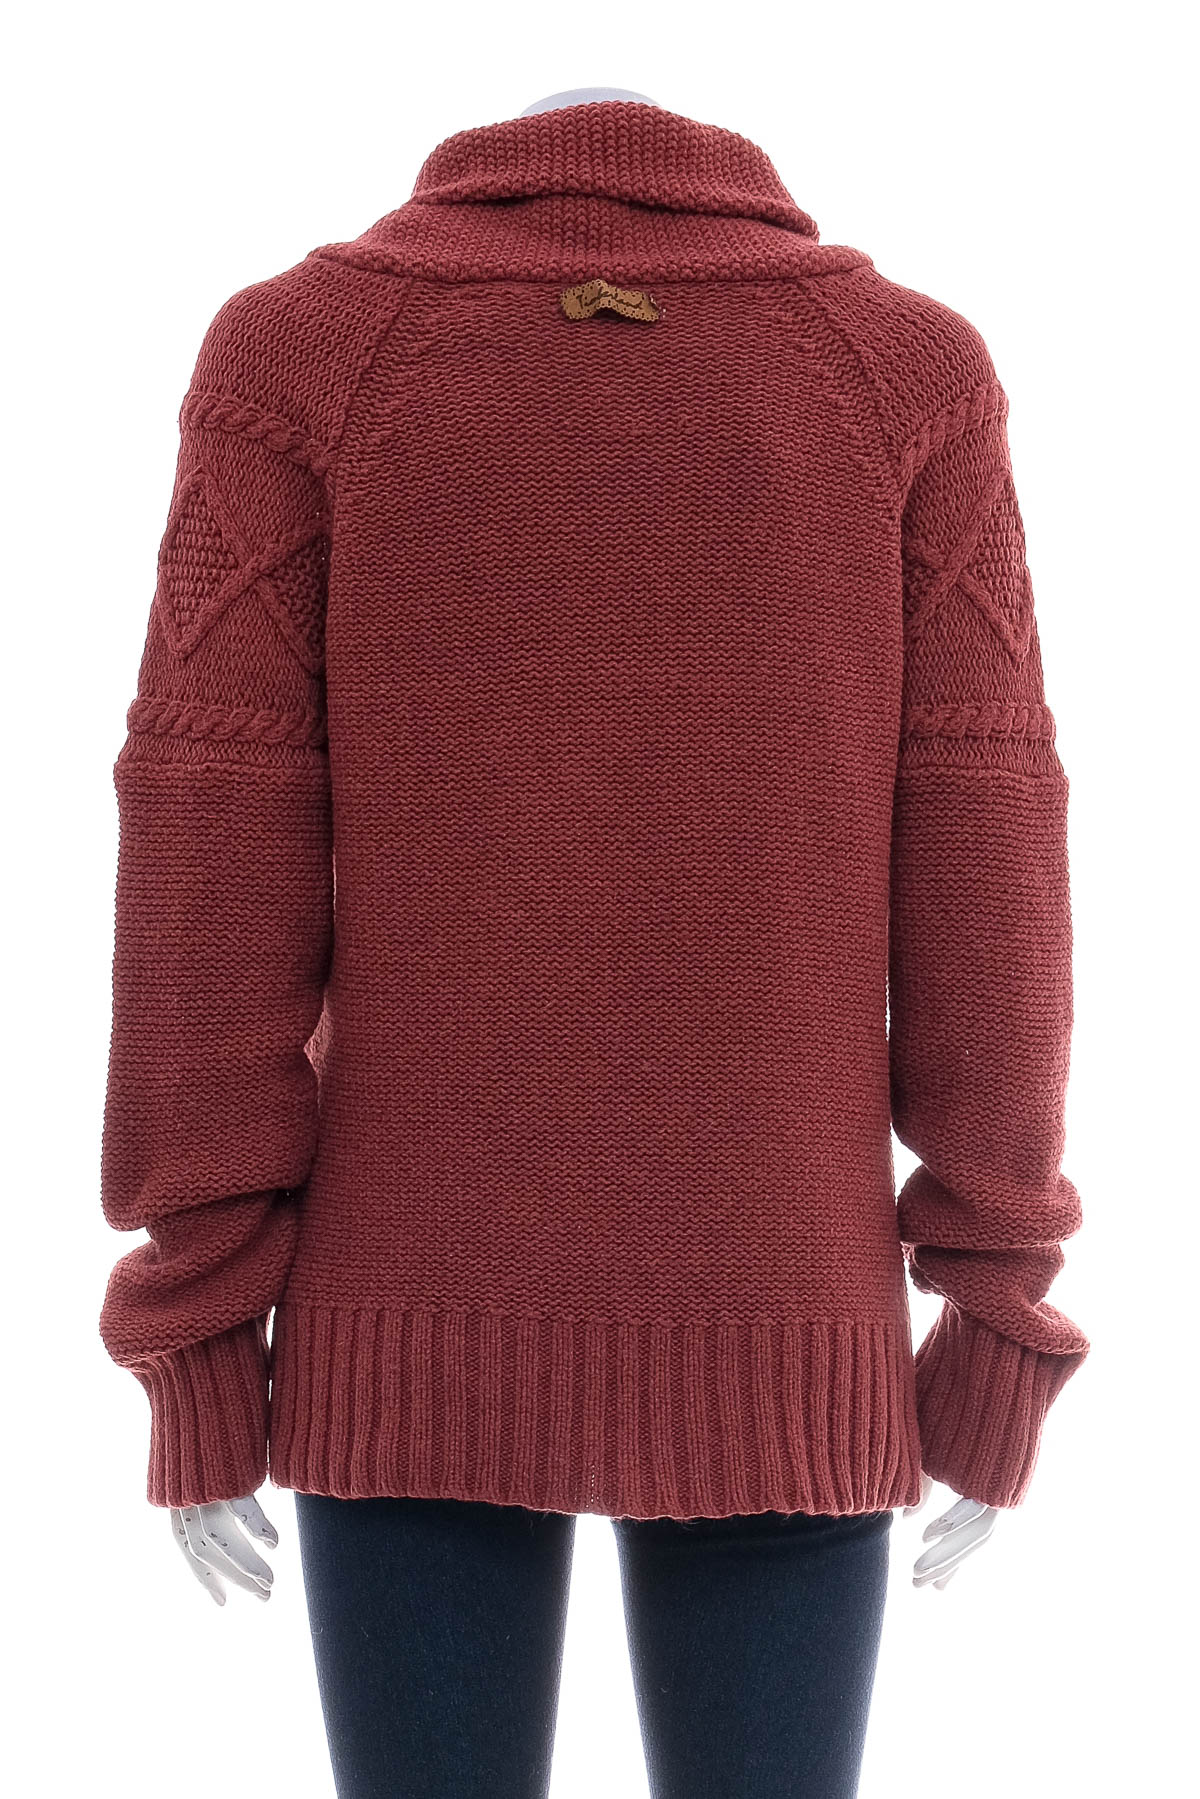 Women's sweater - Timberland - 1